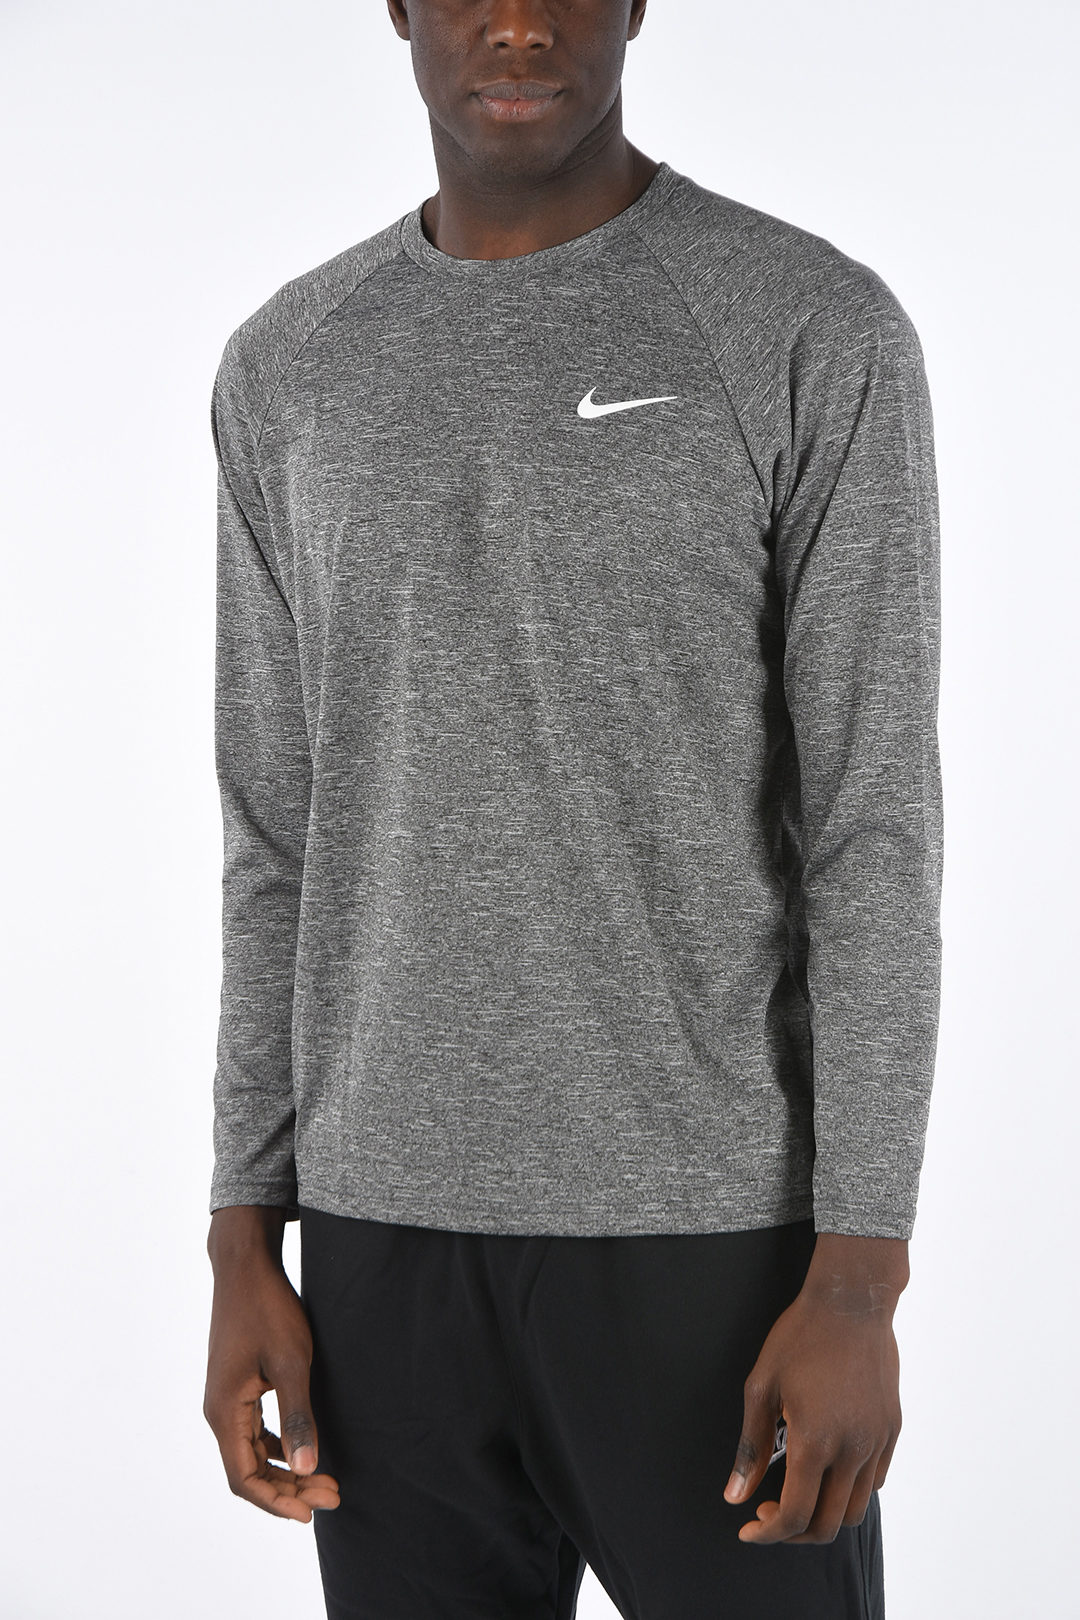 Gewoon Doorbraak Eindig Nike Long Sleeves HYDROGUARD T-shirt men - Glamood Outlet